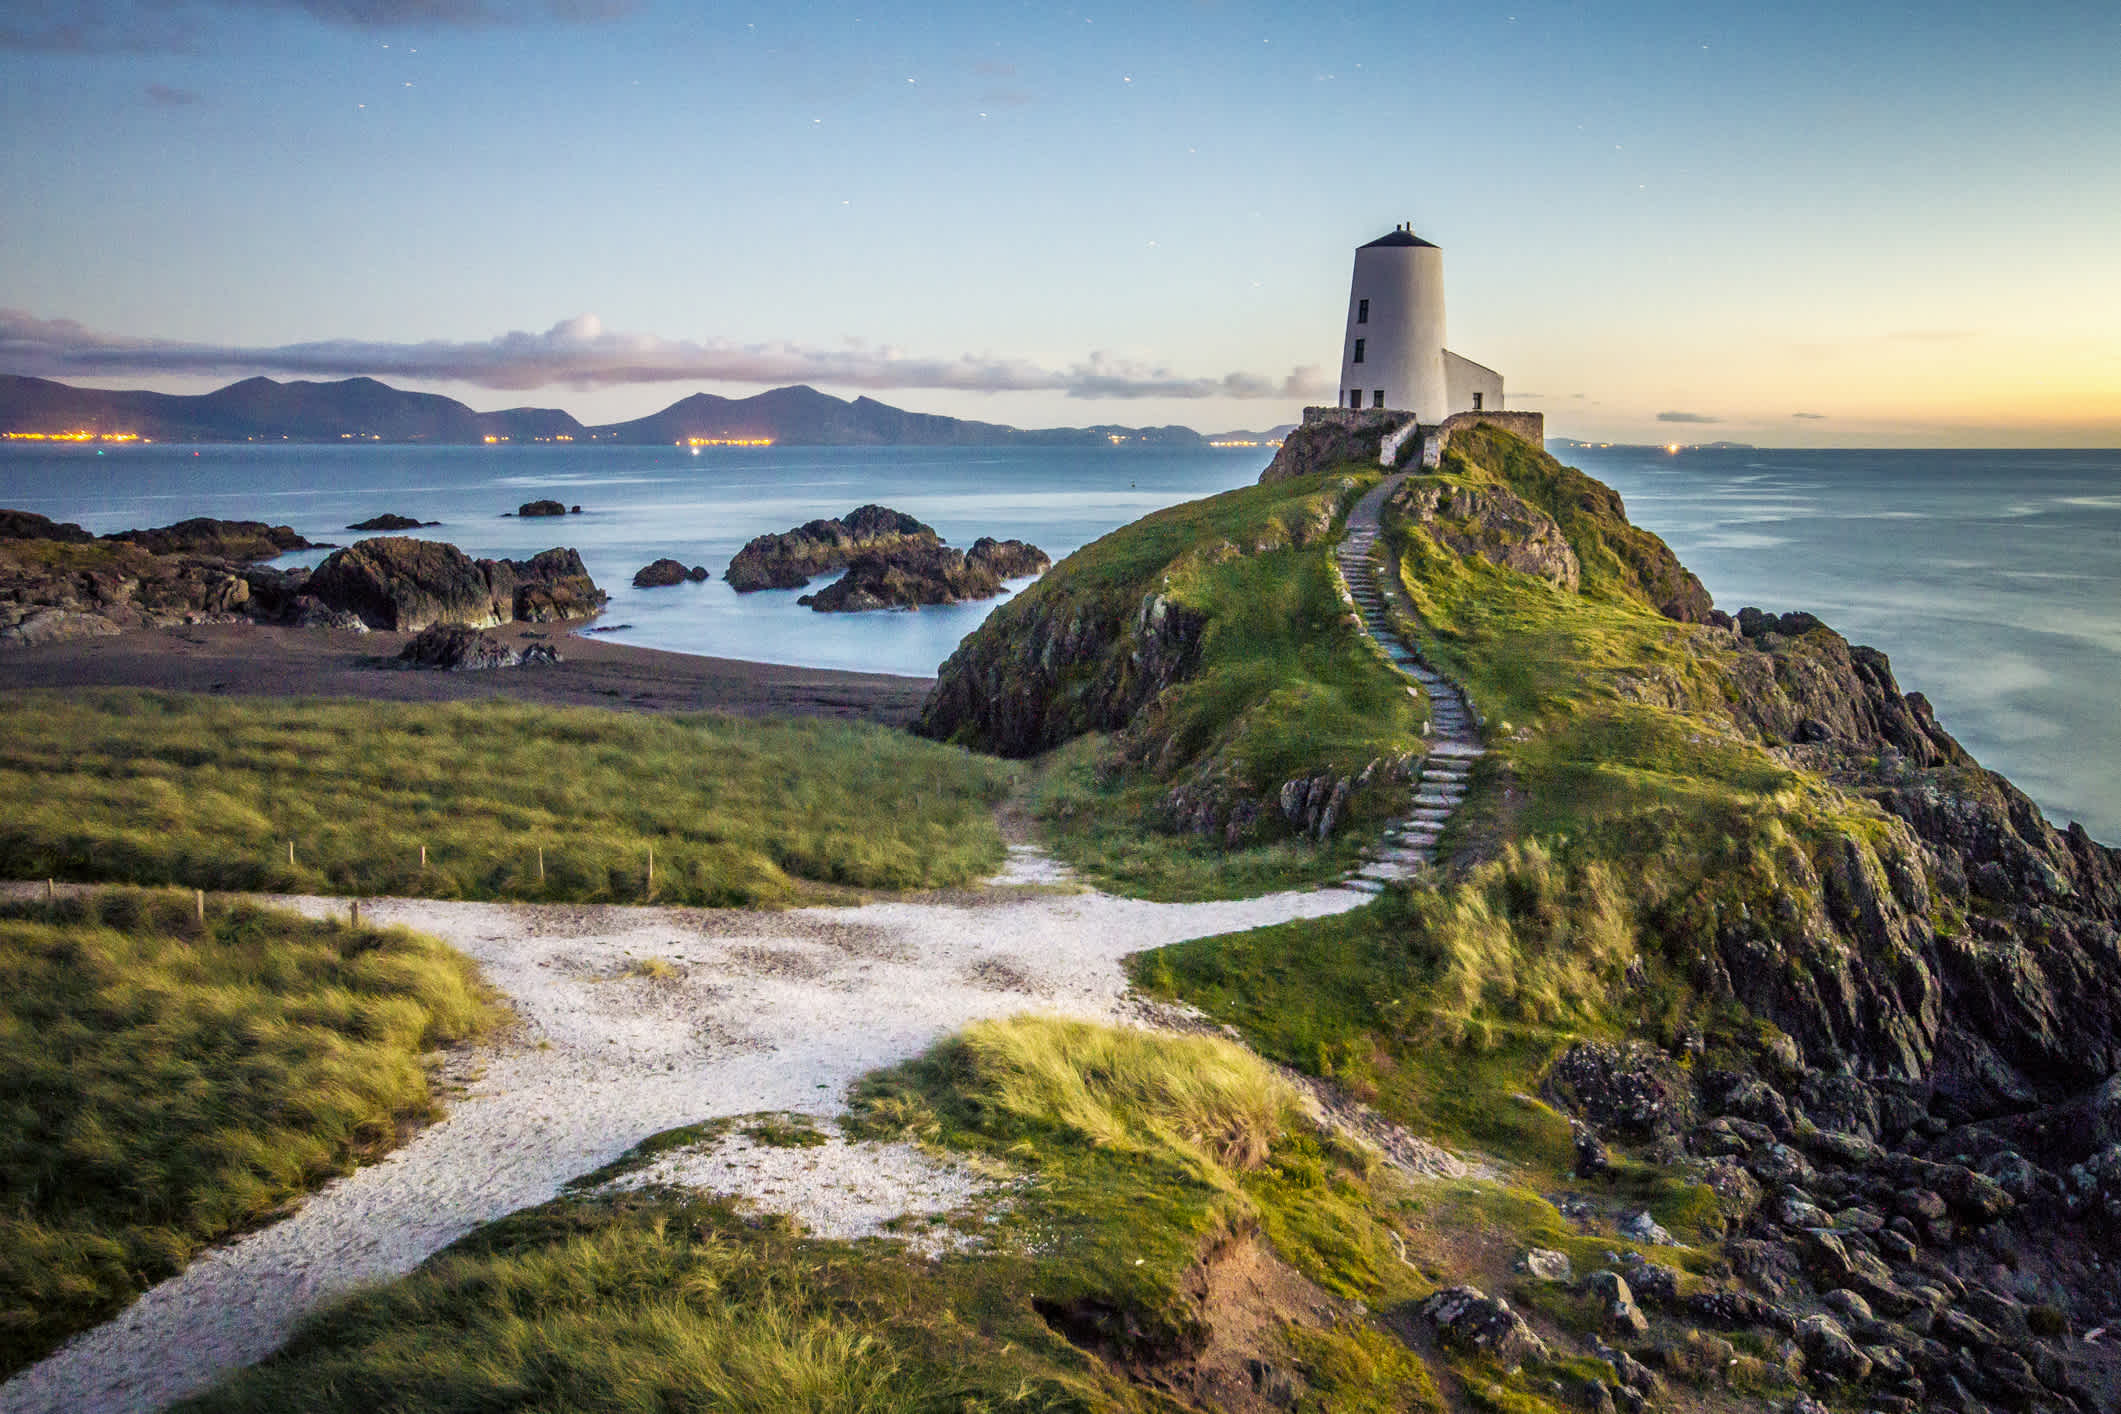 D écouvrez la magnifique côte galloise accidentée, photographiée ici, lors de votre voyage au Pays de Galles.